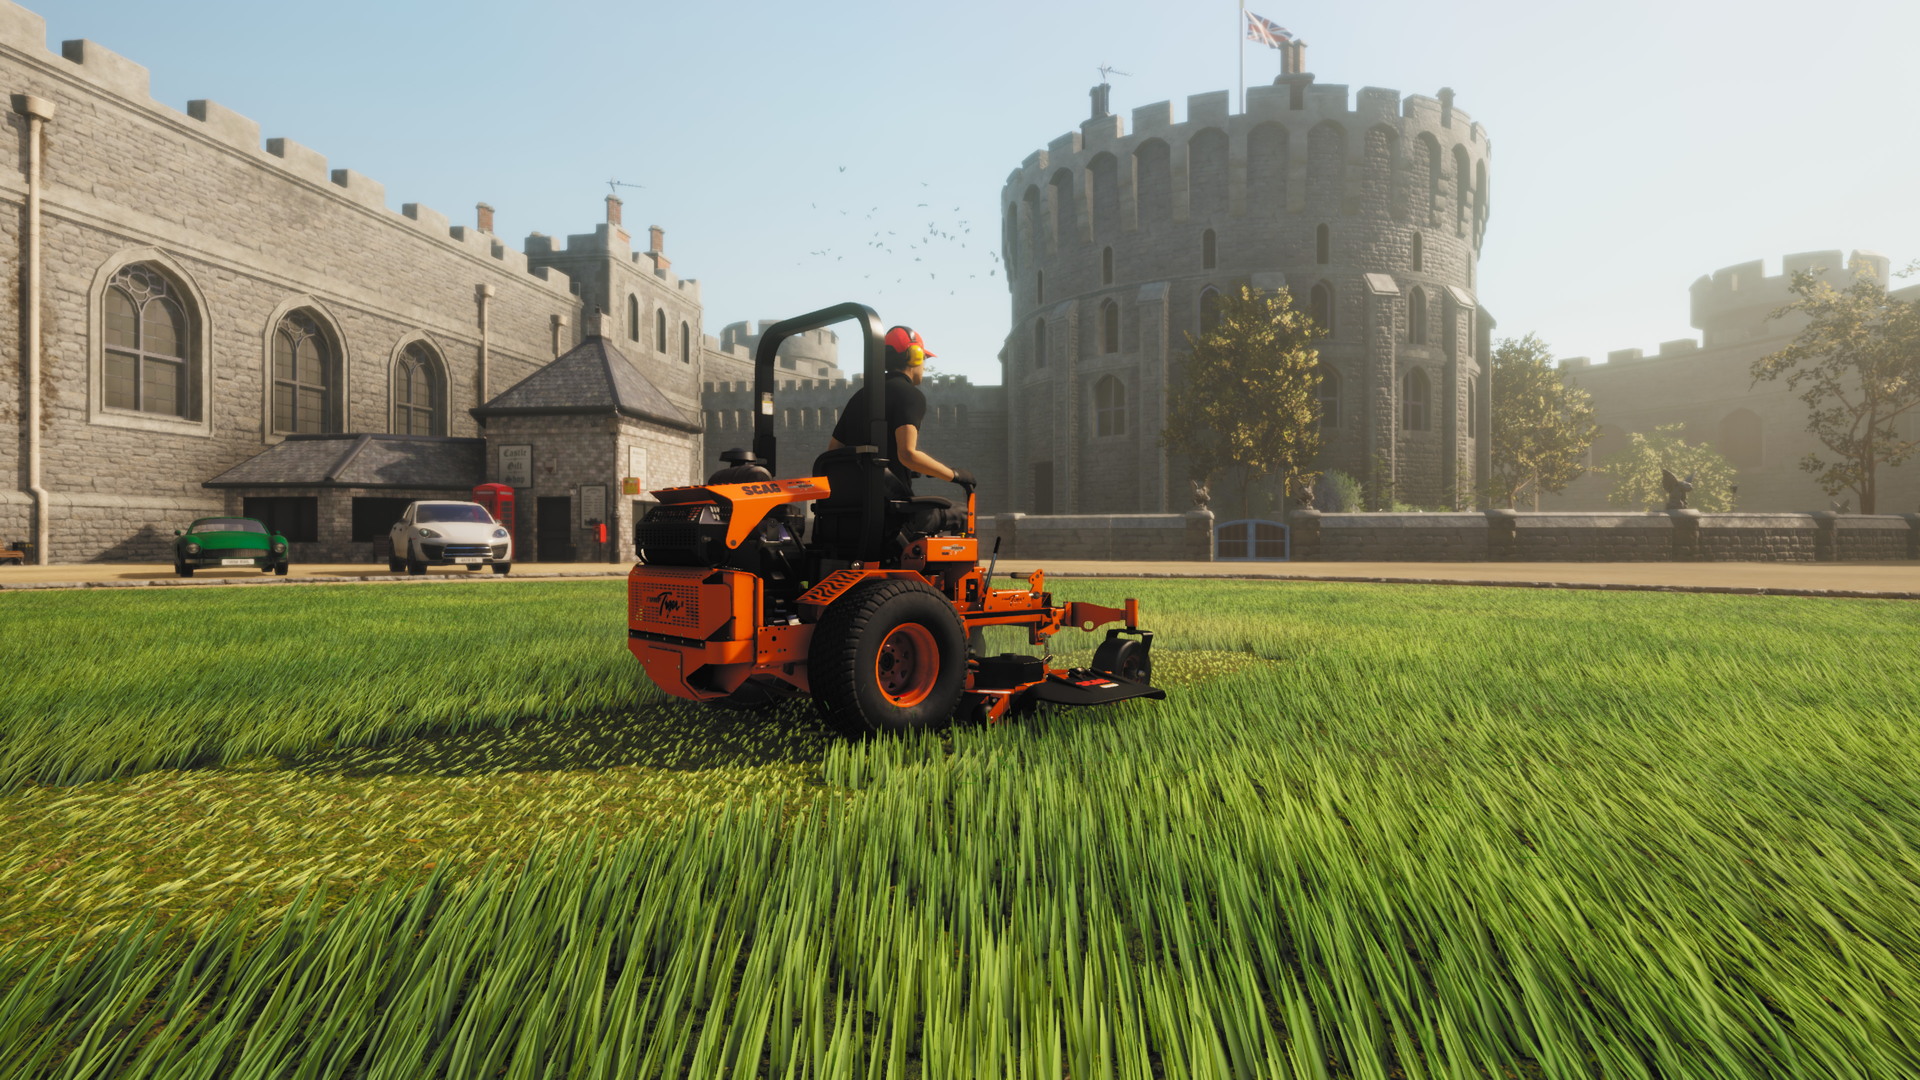 Lawn Mowing Simulator - screenshot 7